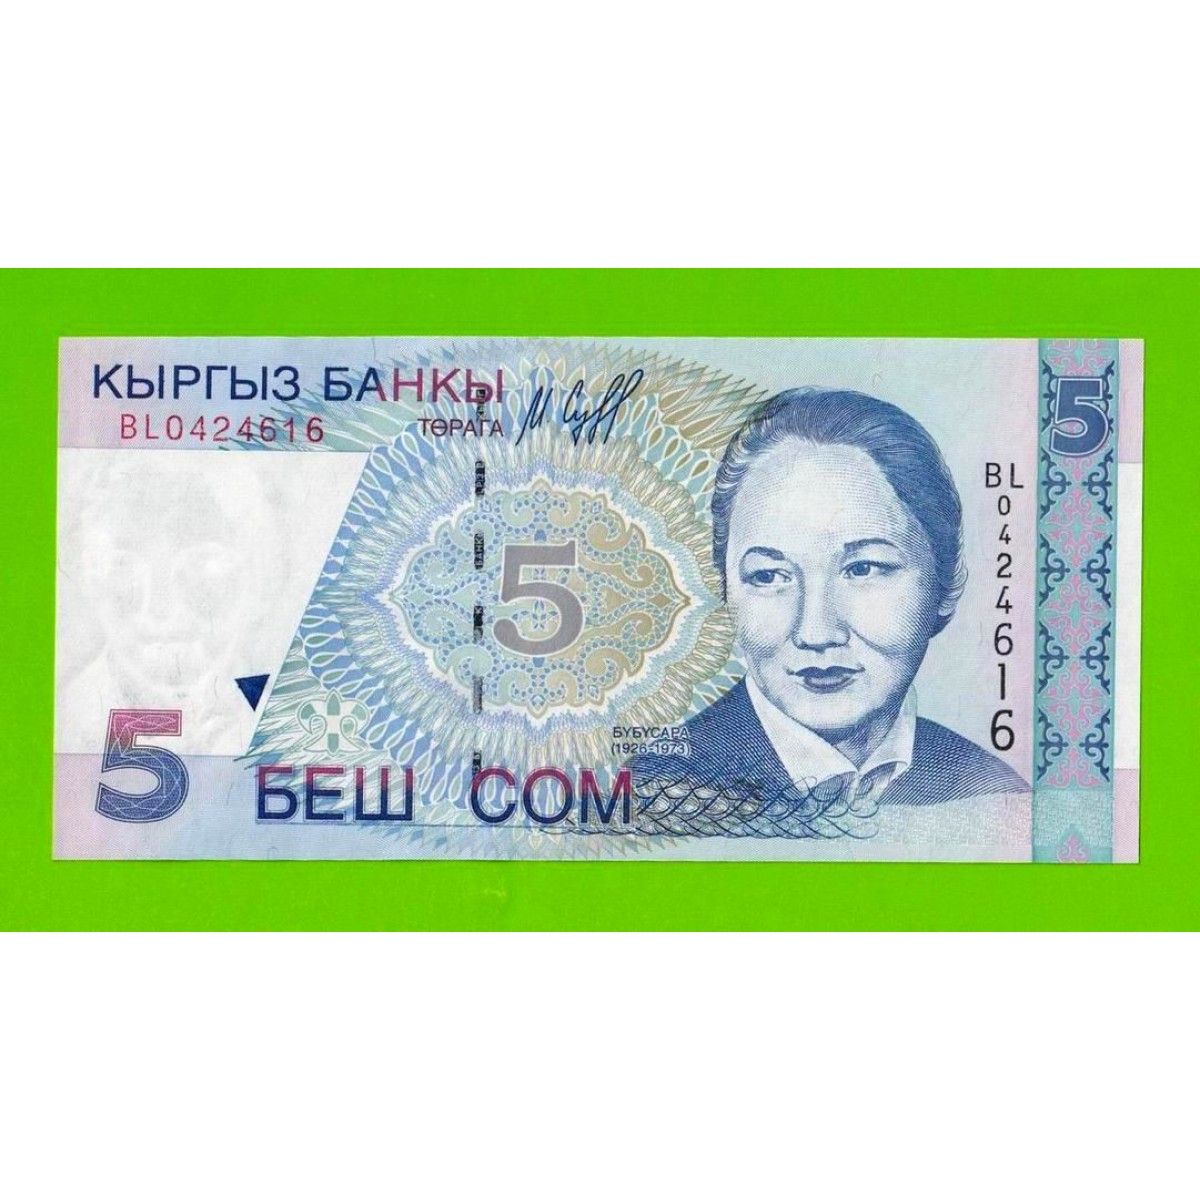 Киргизский сум. 5000 Сом Киргизия. Кыргызские купюры. Сом банкнота киргизский. Денежные купюры Кыргызстана.